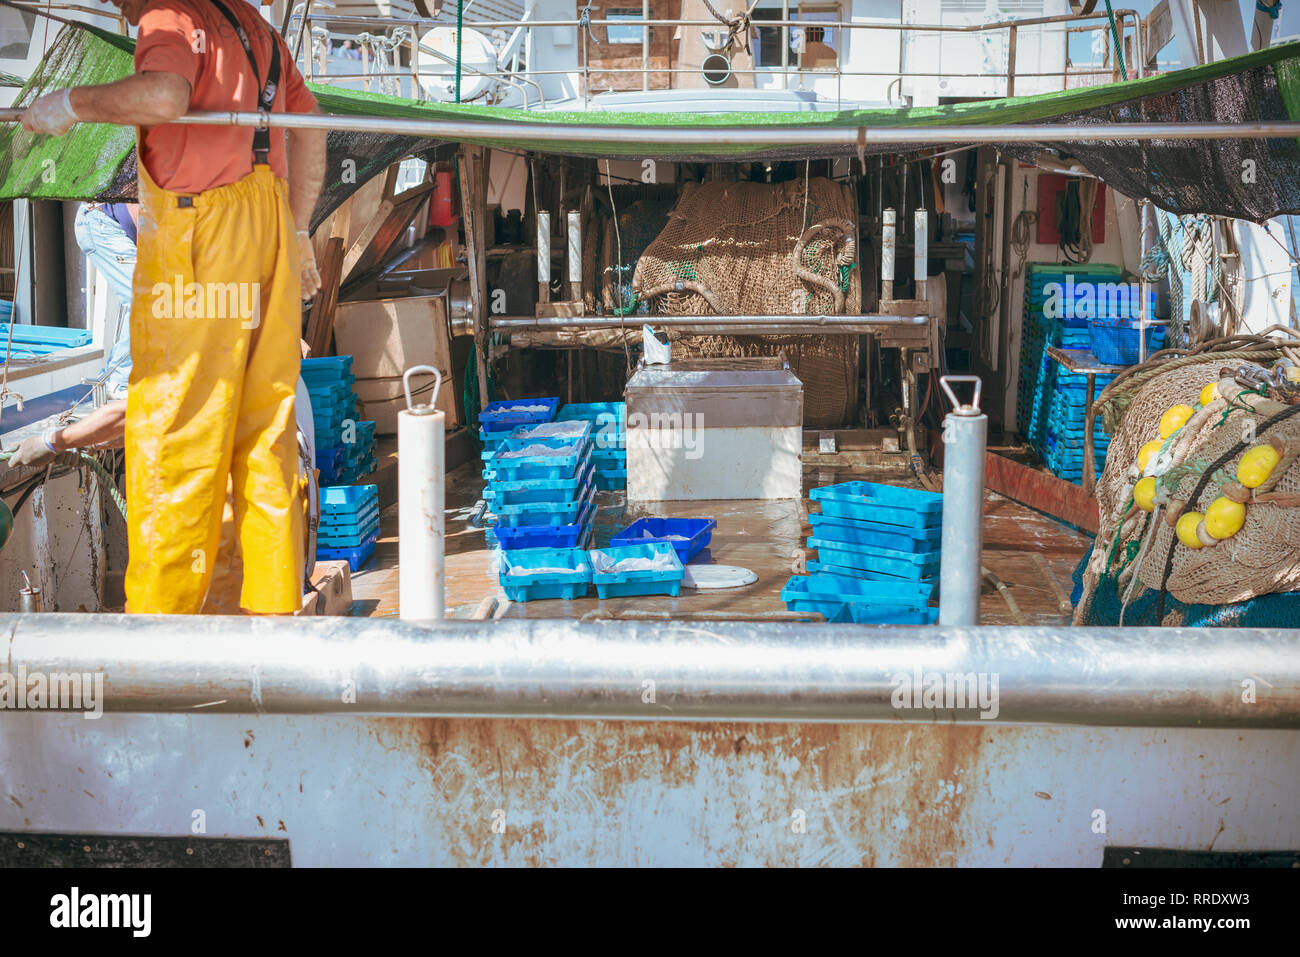 Ein Fischer tragen gelbe Overalls räumt Geräte, die auf dem Deck eines Fischtrawler im Hafen von Denia, Spanien. Stockfoto